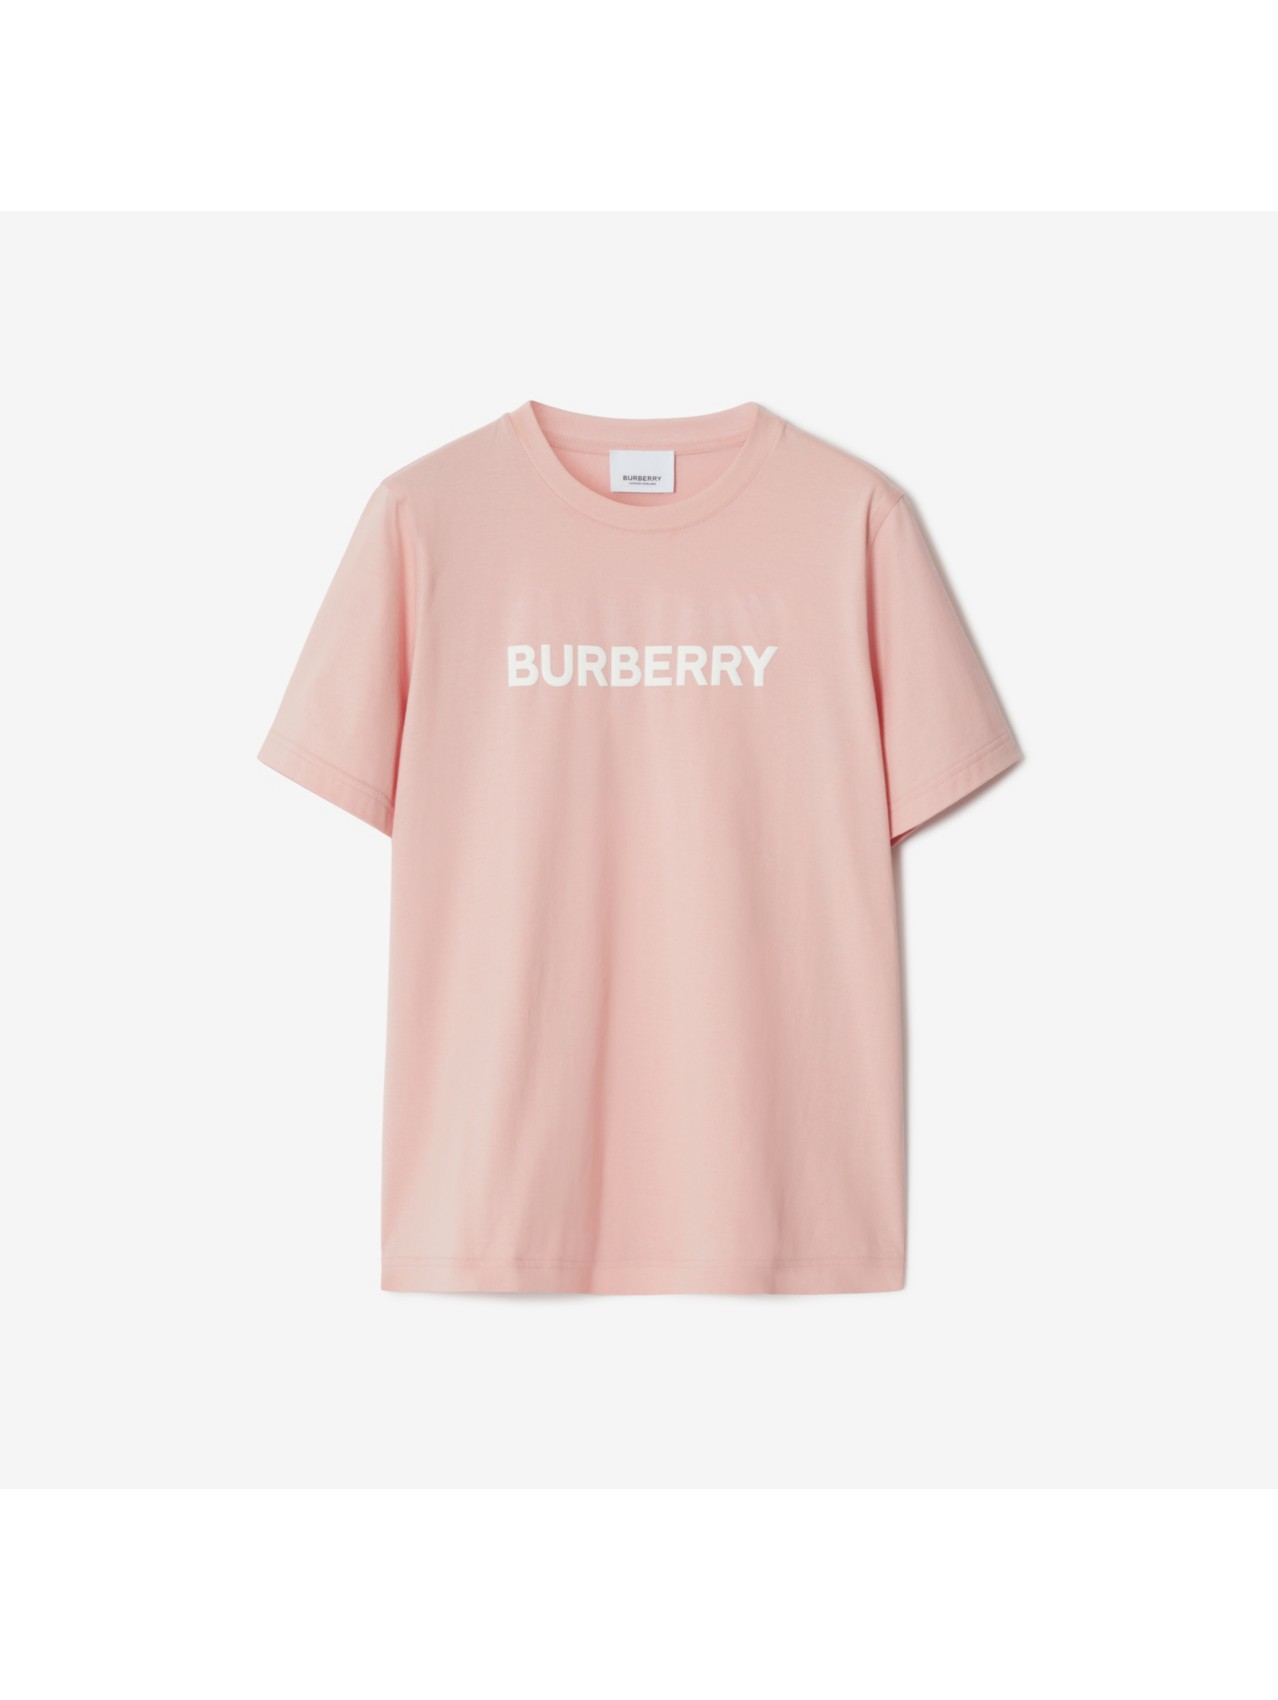 Polos y camisetas de marca para mujer | Burberry® oficial